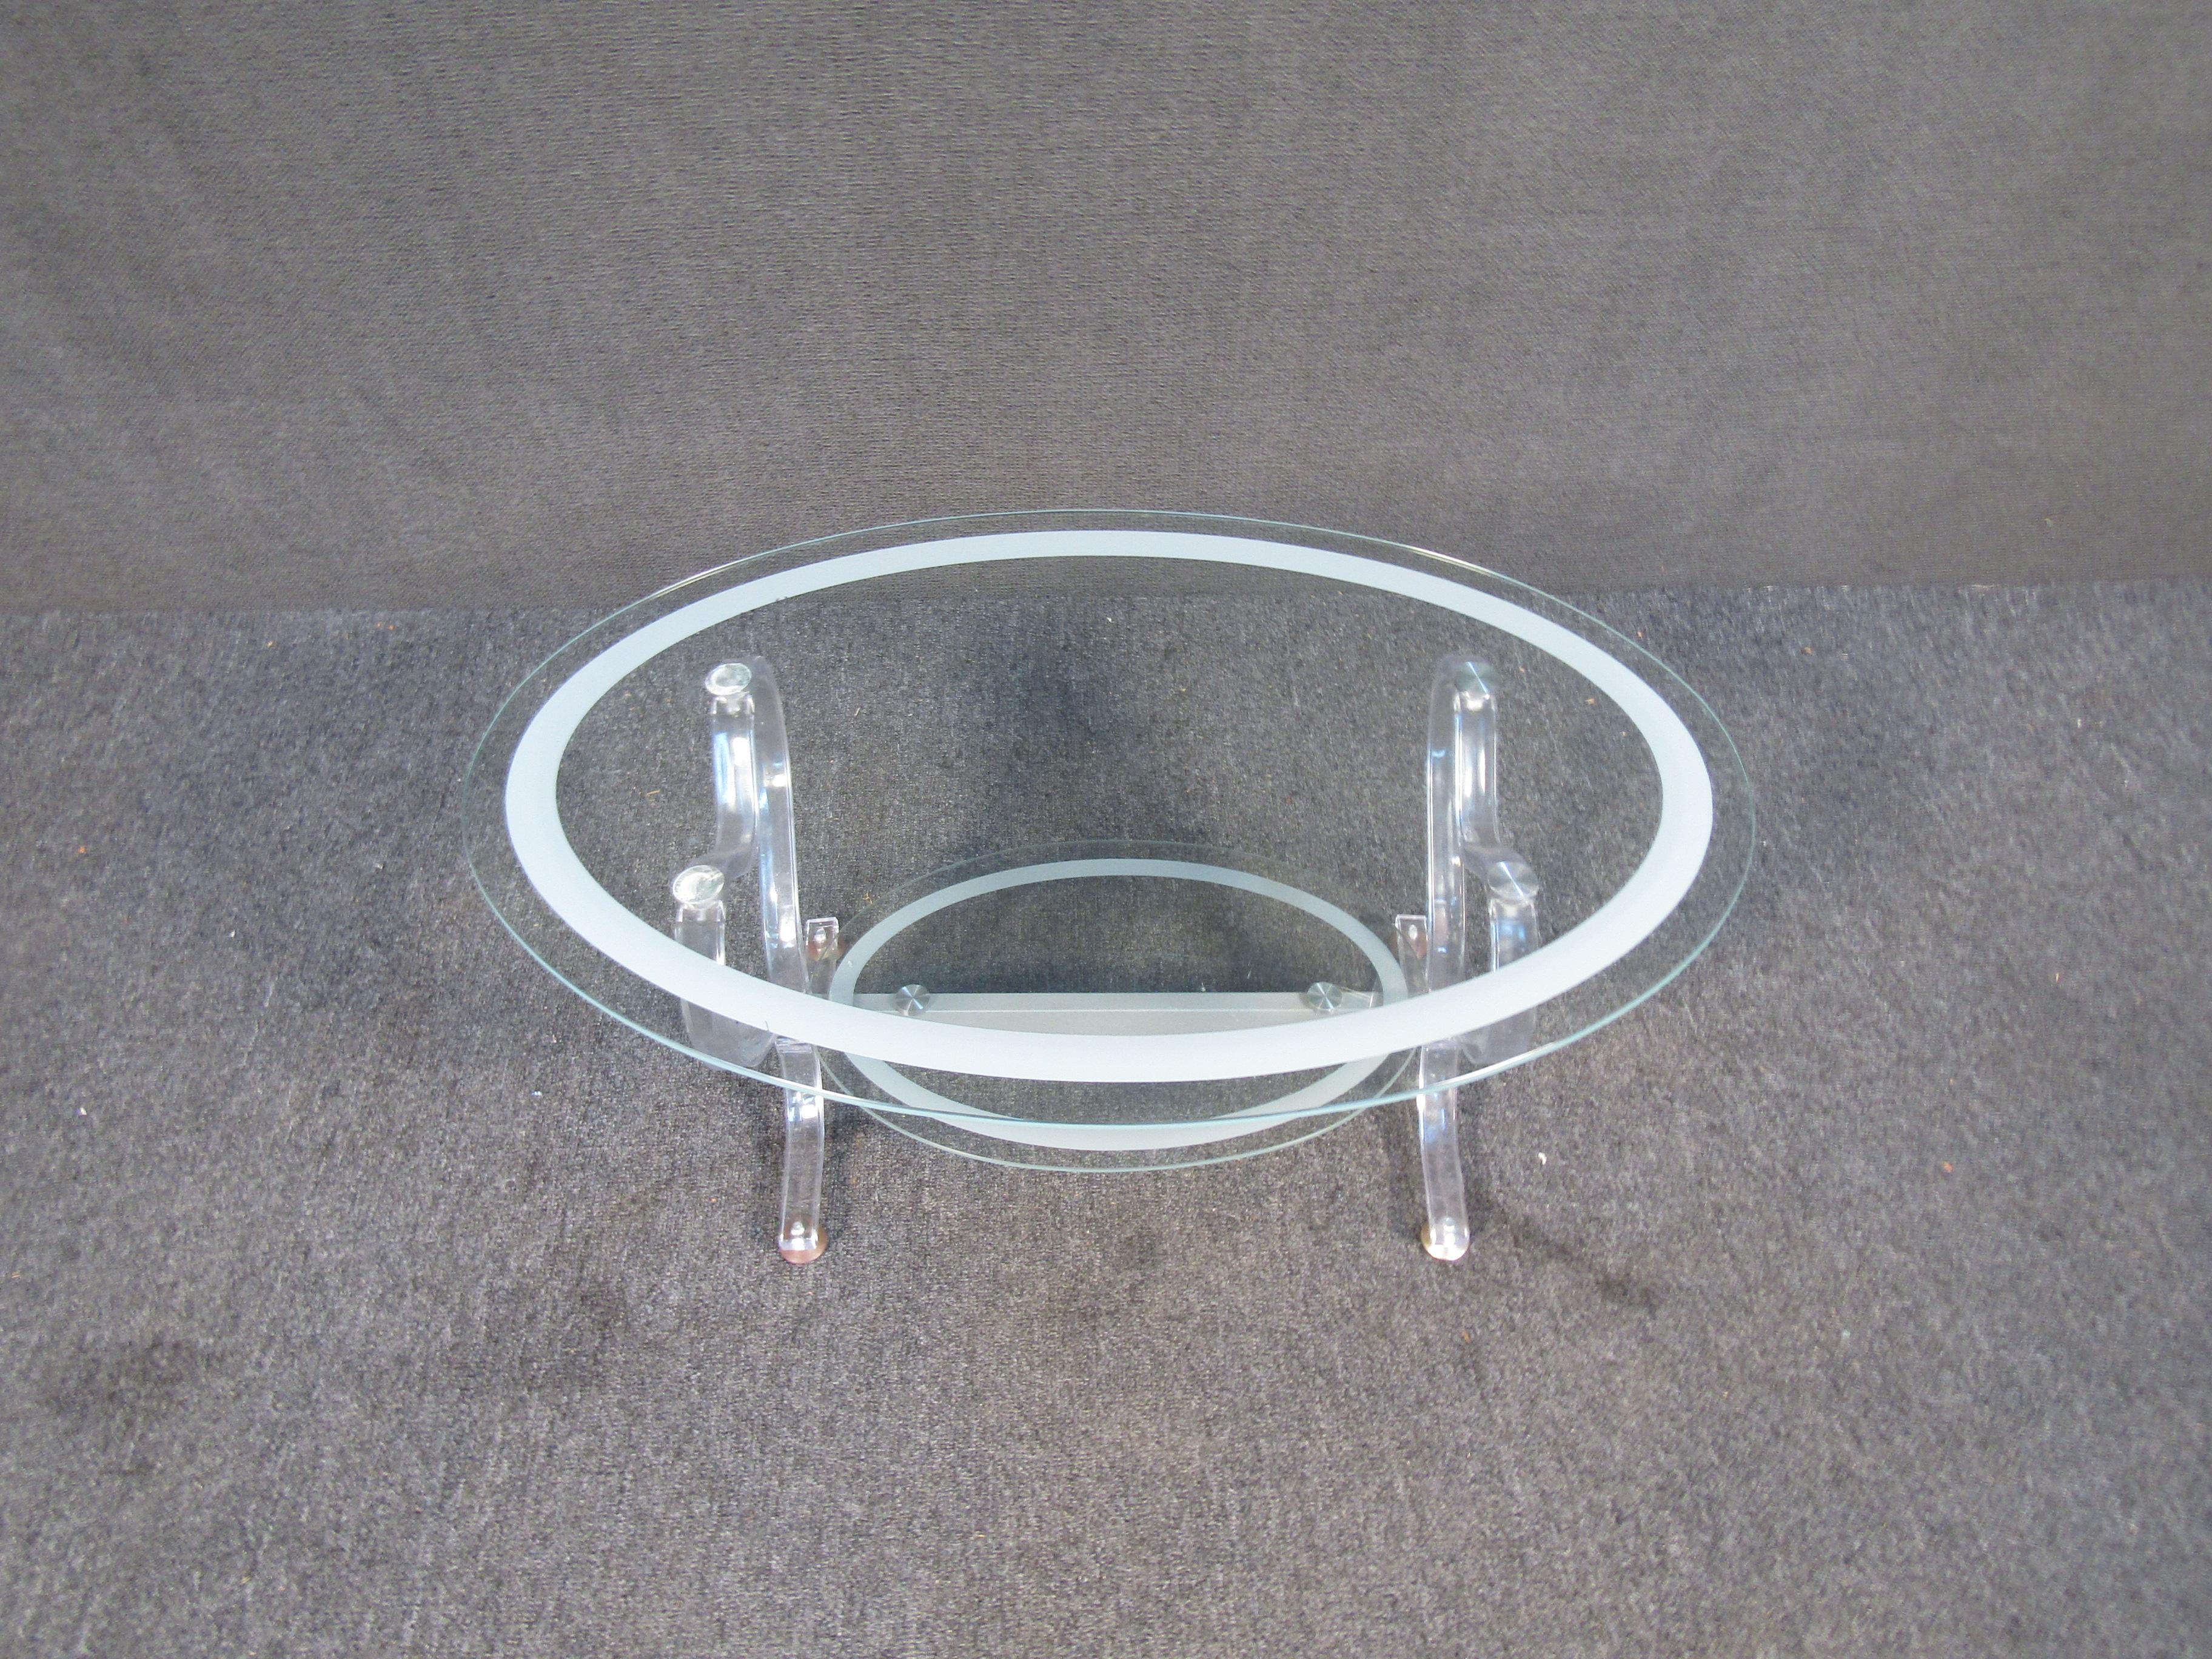 Dieser einzigartige, zweistufige Glastisch hat ein ovales Design und einen verzierten Sockel aus Lucite. Weiß gestreifte Akzente umgeben sowohl die oberen als auch die unteren Regalböden. Dieser Tisch ist die perfekte Ergänzung für jede Lounge, in